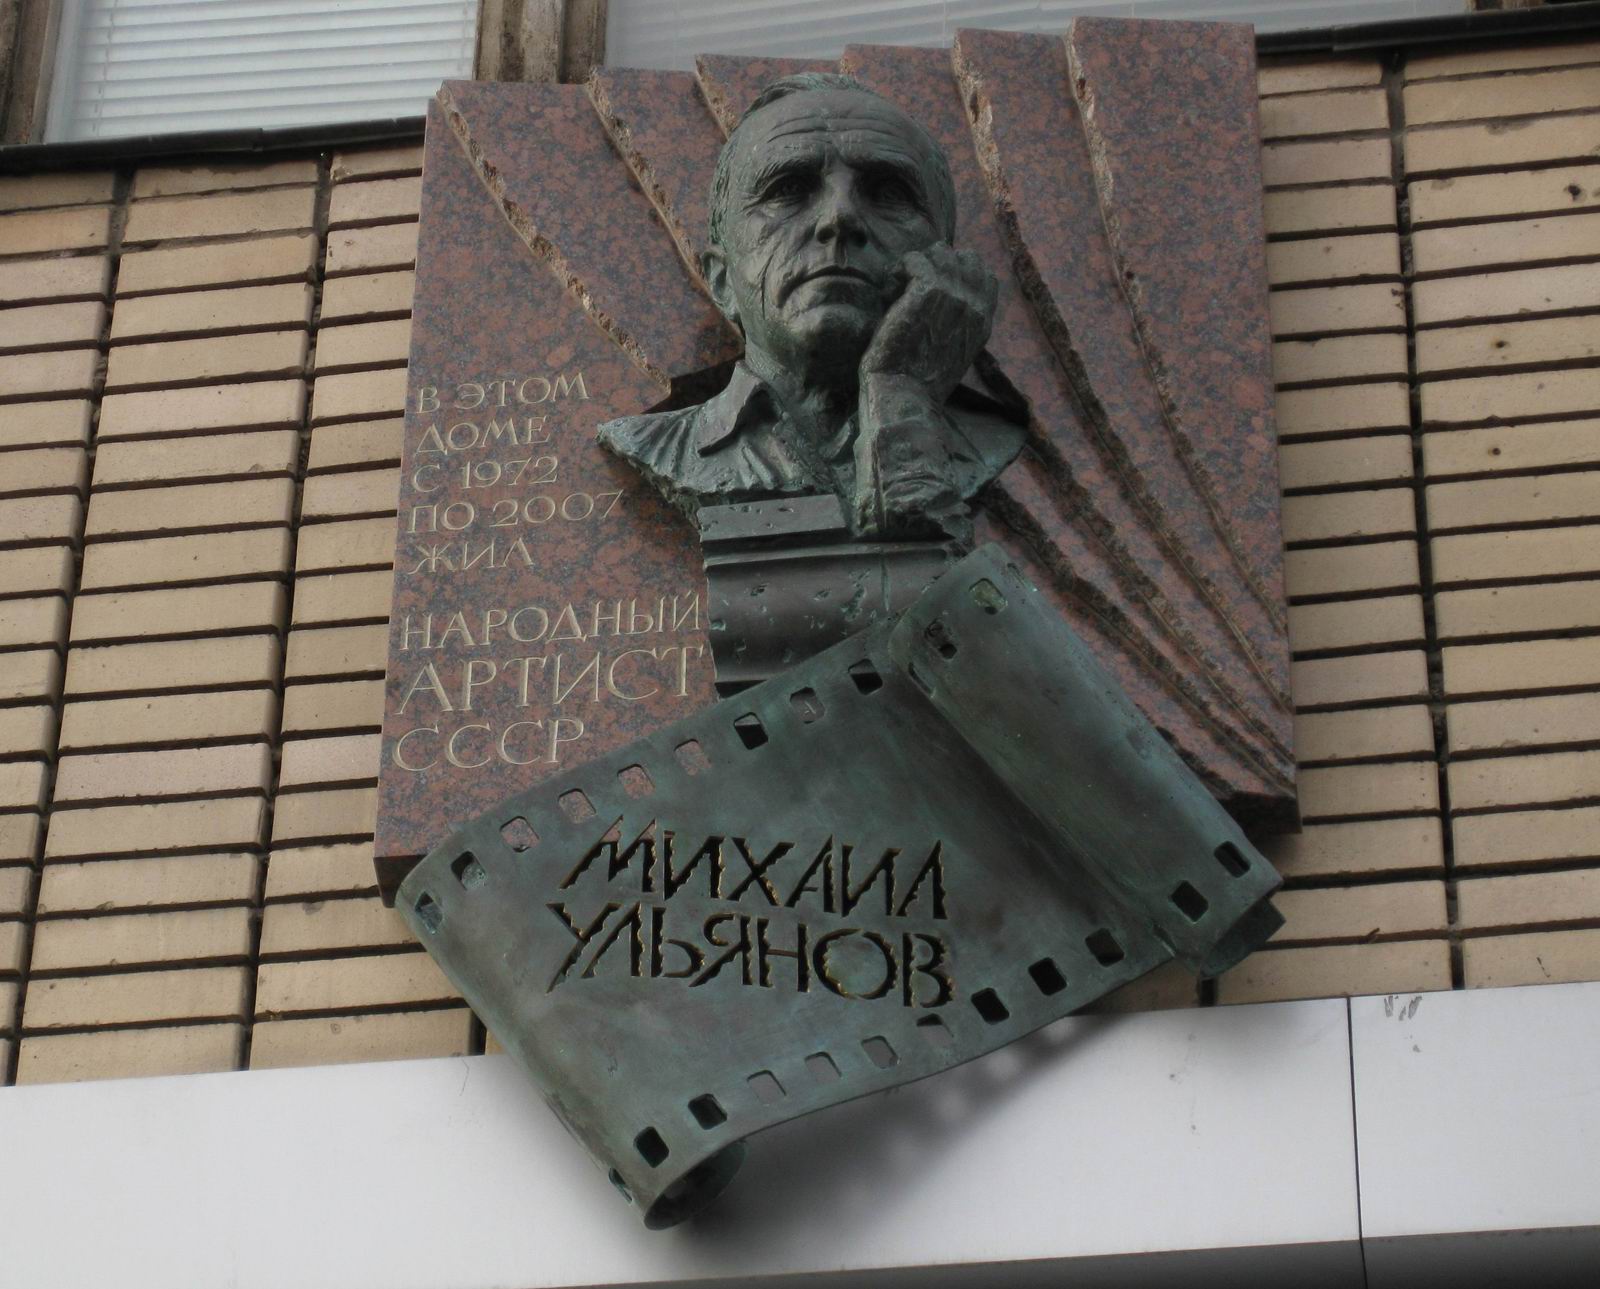 Мемориальная доска Ульянову М.А. (1927–2007), ск. А.Балашов, на Большой Бронной улице, дом 29, открыта 2.10.2009.